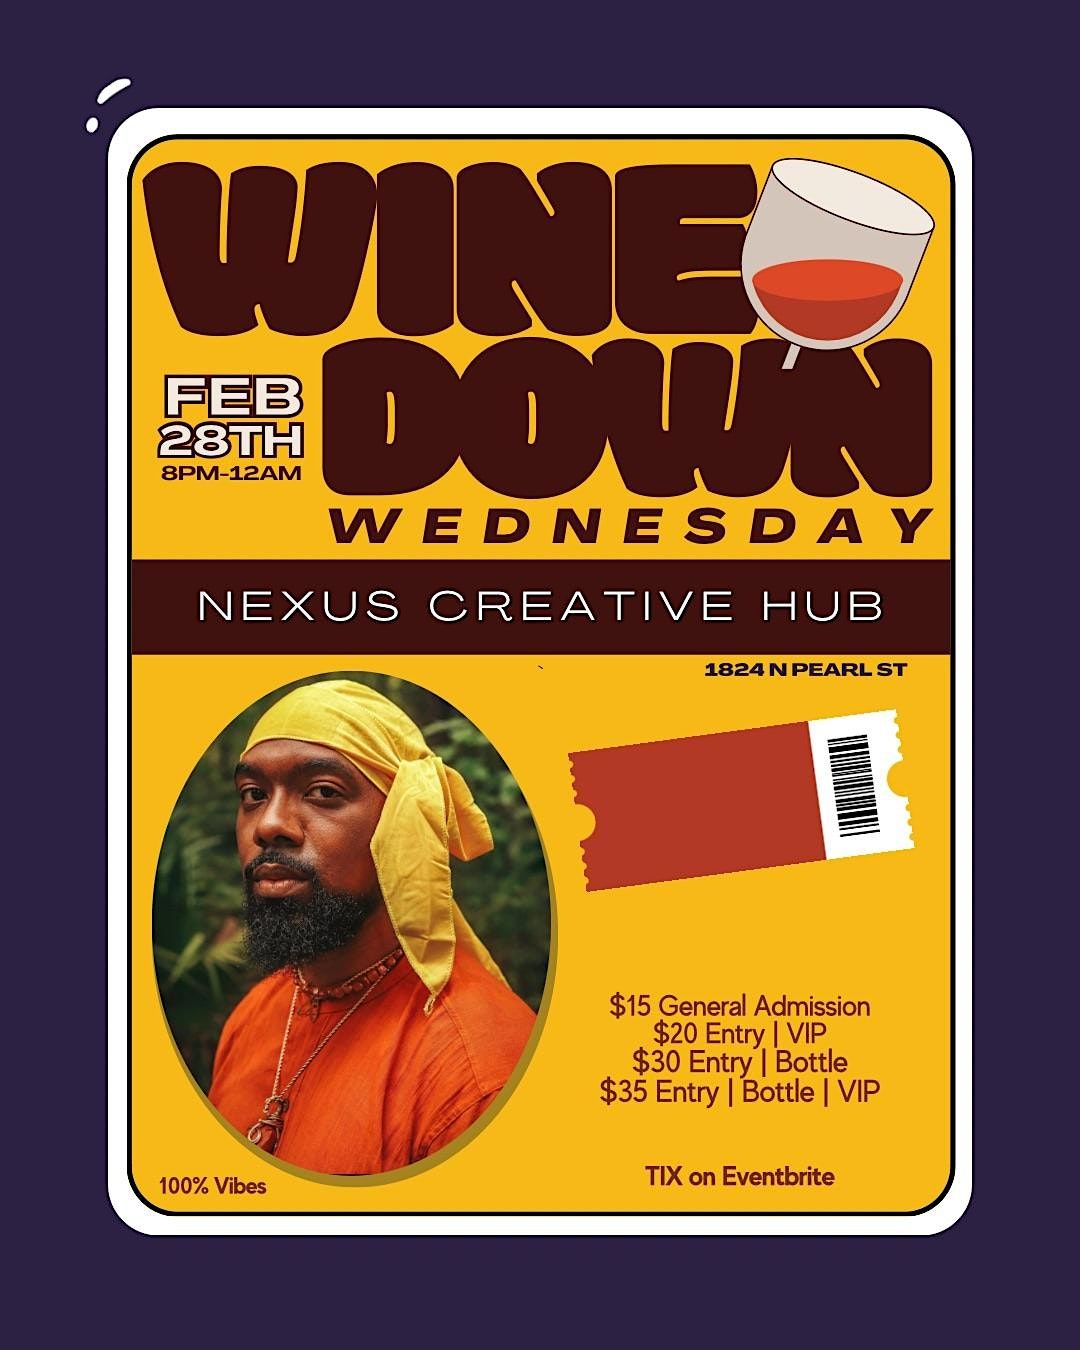 Wine Down Wednesday @ Nexus Creative Hub